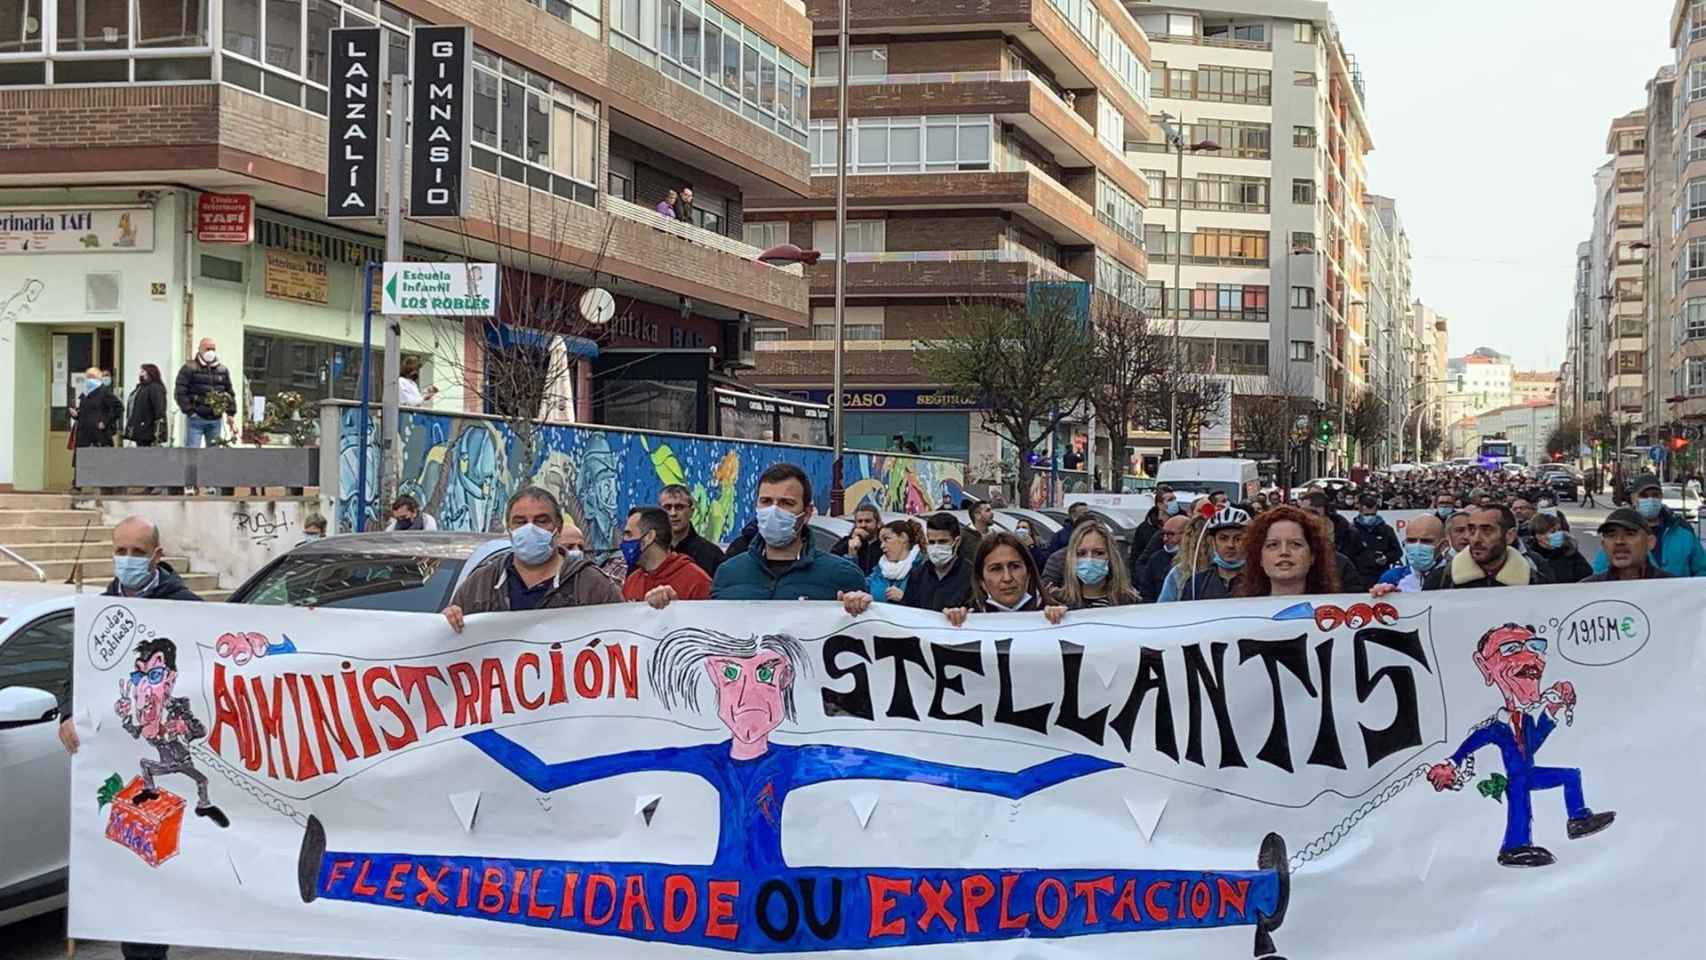 Marcha en protesta por la situación de Stellantis Vigo.